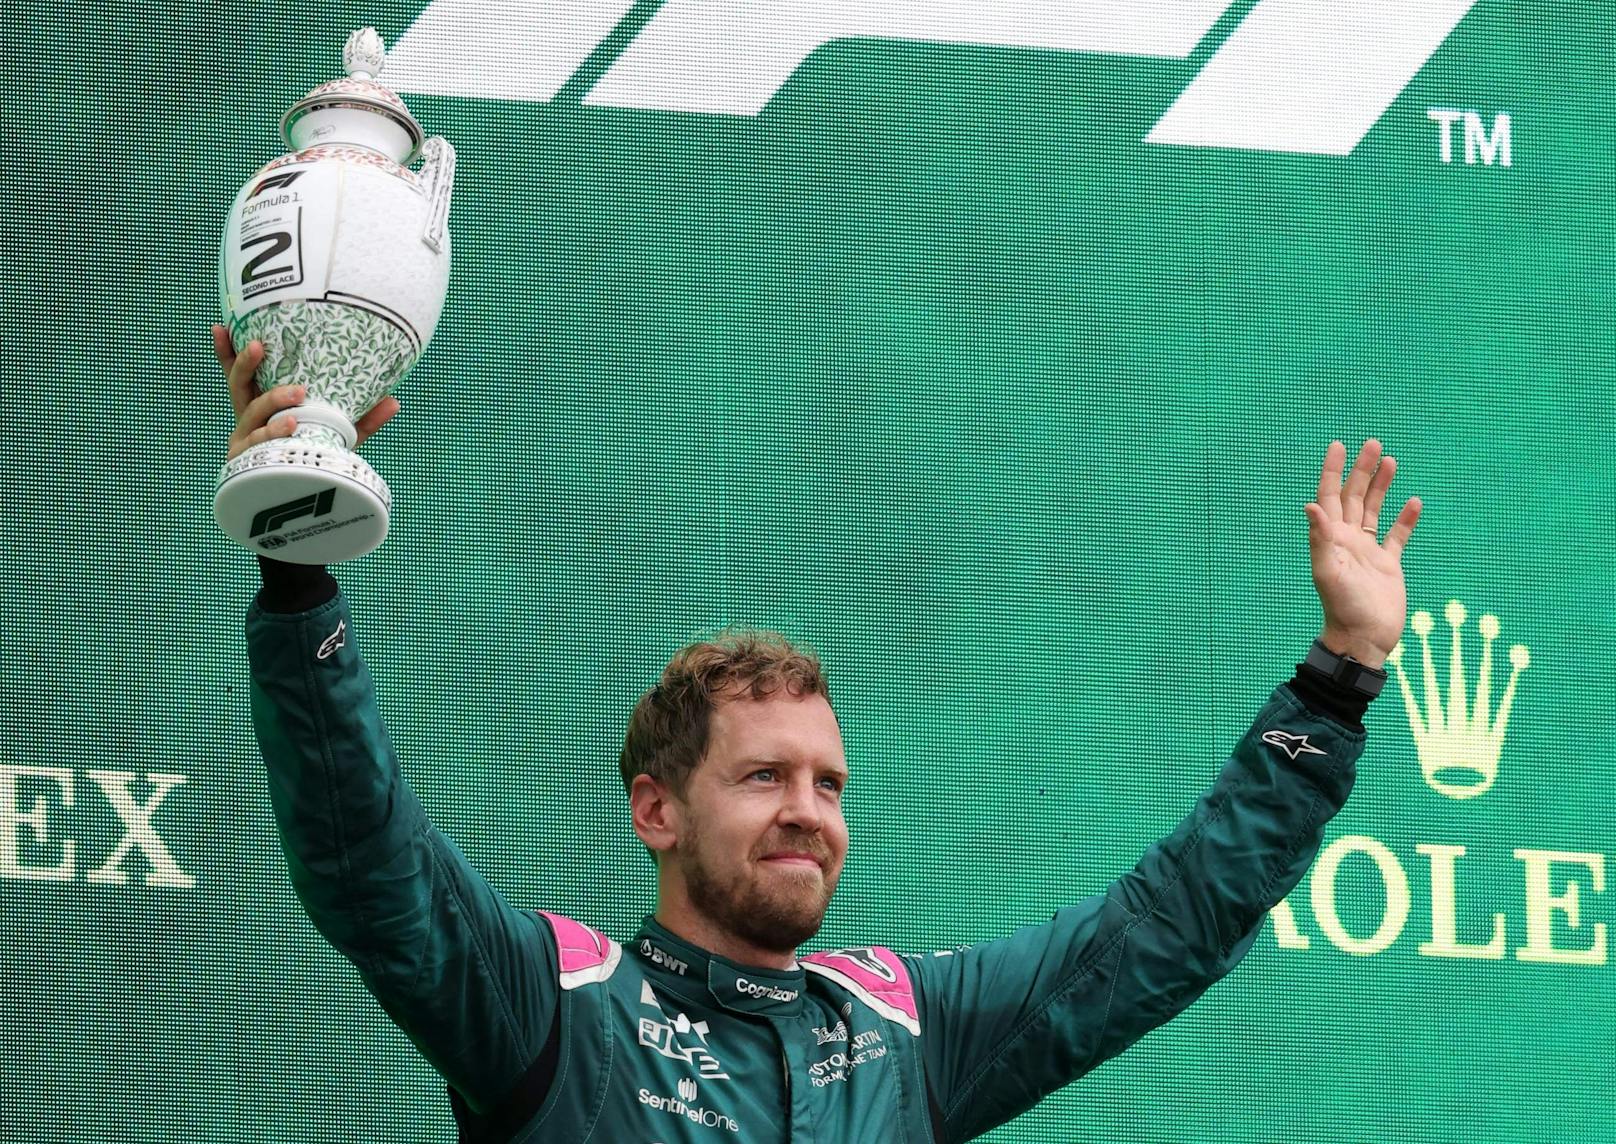 Für Sebastian Vettel war's ein bitterer Tag. Der Deutsche pilotierte seinen Aston Martin zwar auf Platz zwei, wurde aber wegen zu wenig Sprit im Auto disqualifiziert. 